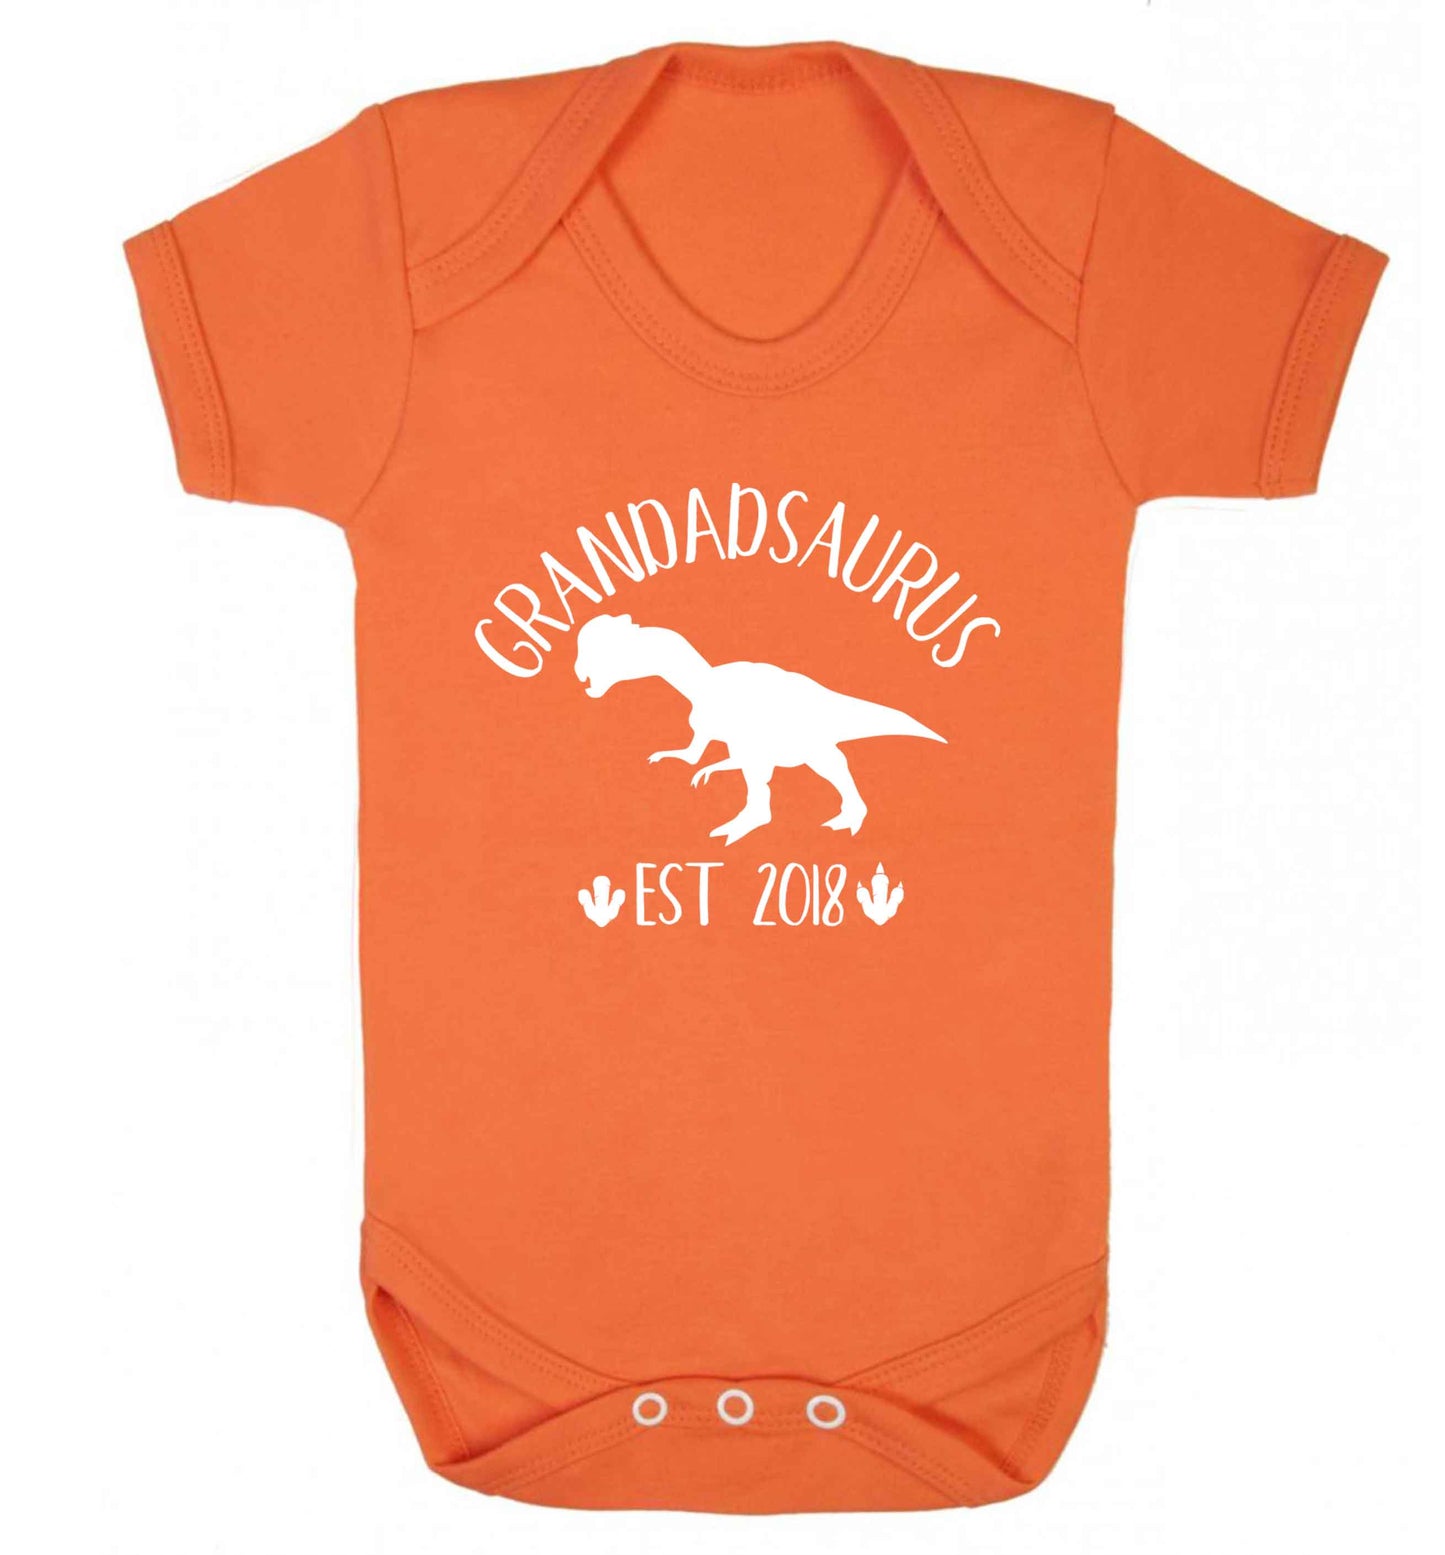 Personalised grandadsaurus since (custom date) Baby Vest orange 18-24 months